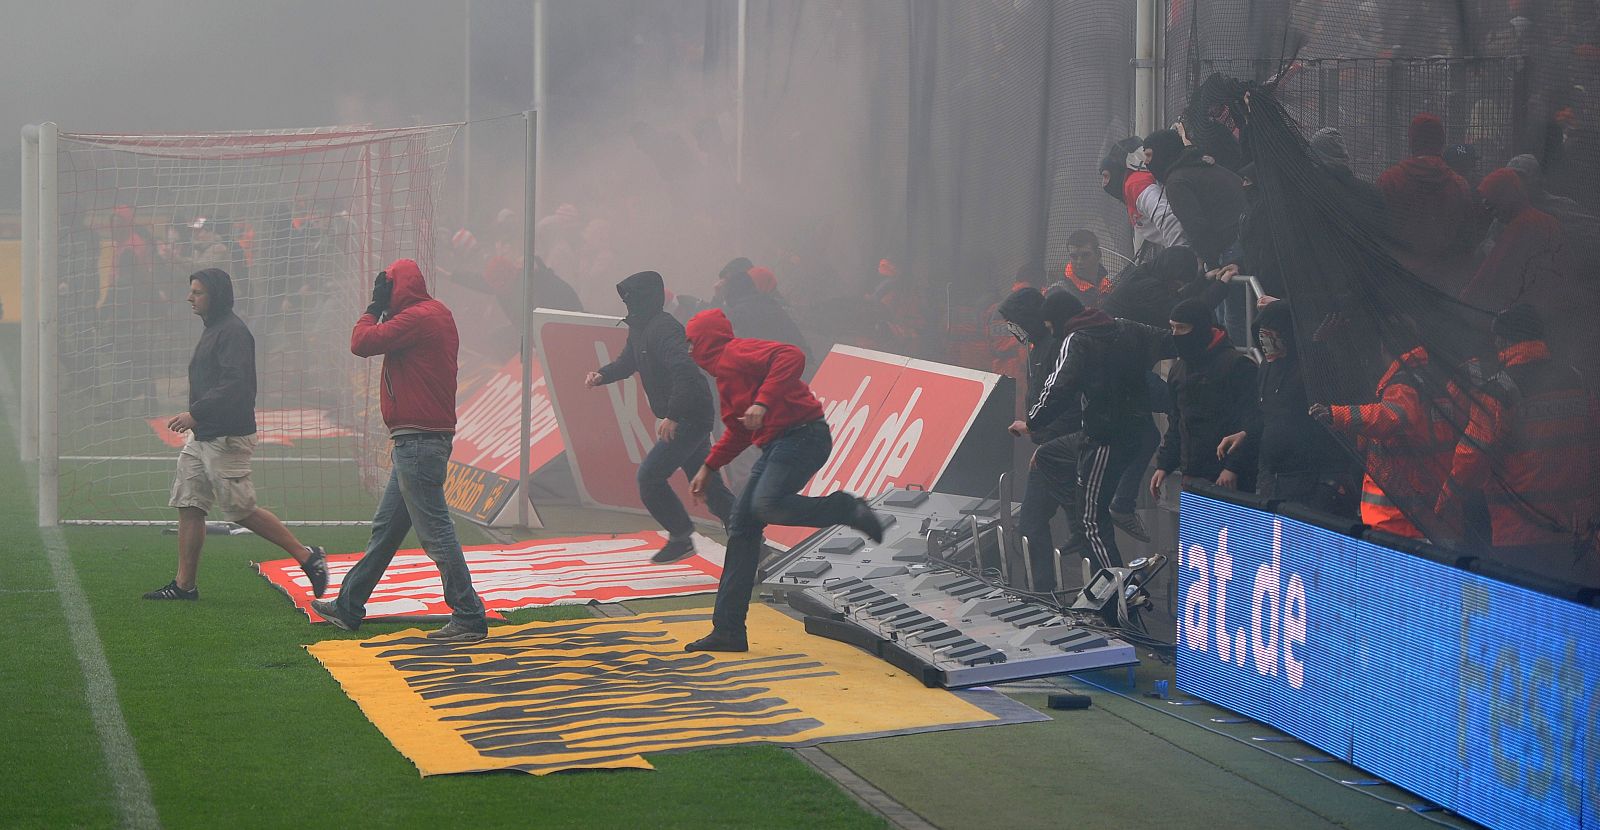 Hinchas radicales del Colonia invaden el campo tras la derrota de su equipo contra el Bayern, que supone el descenso